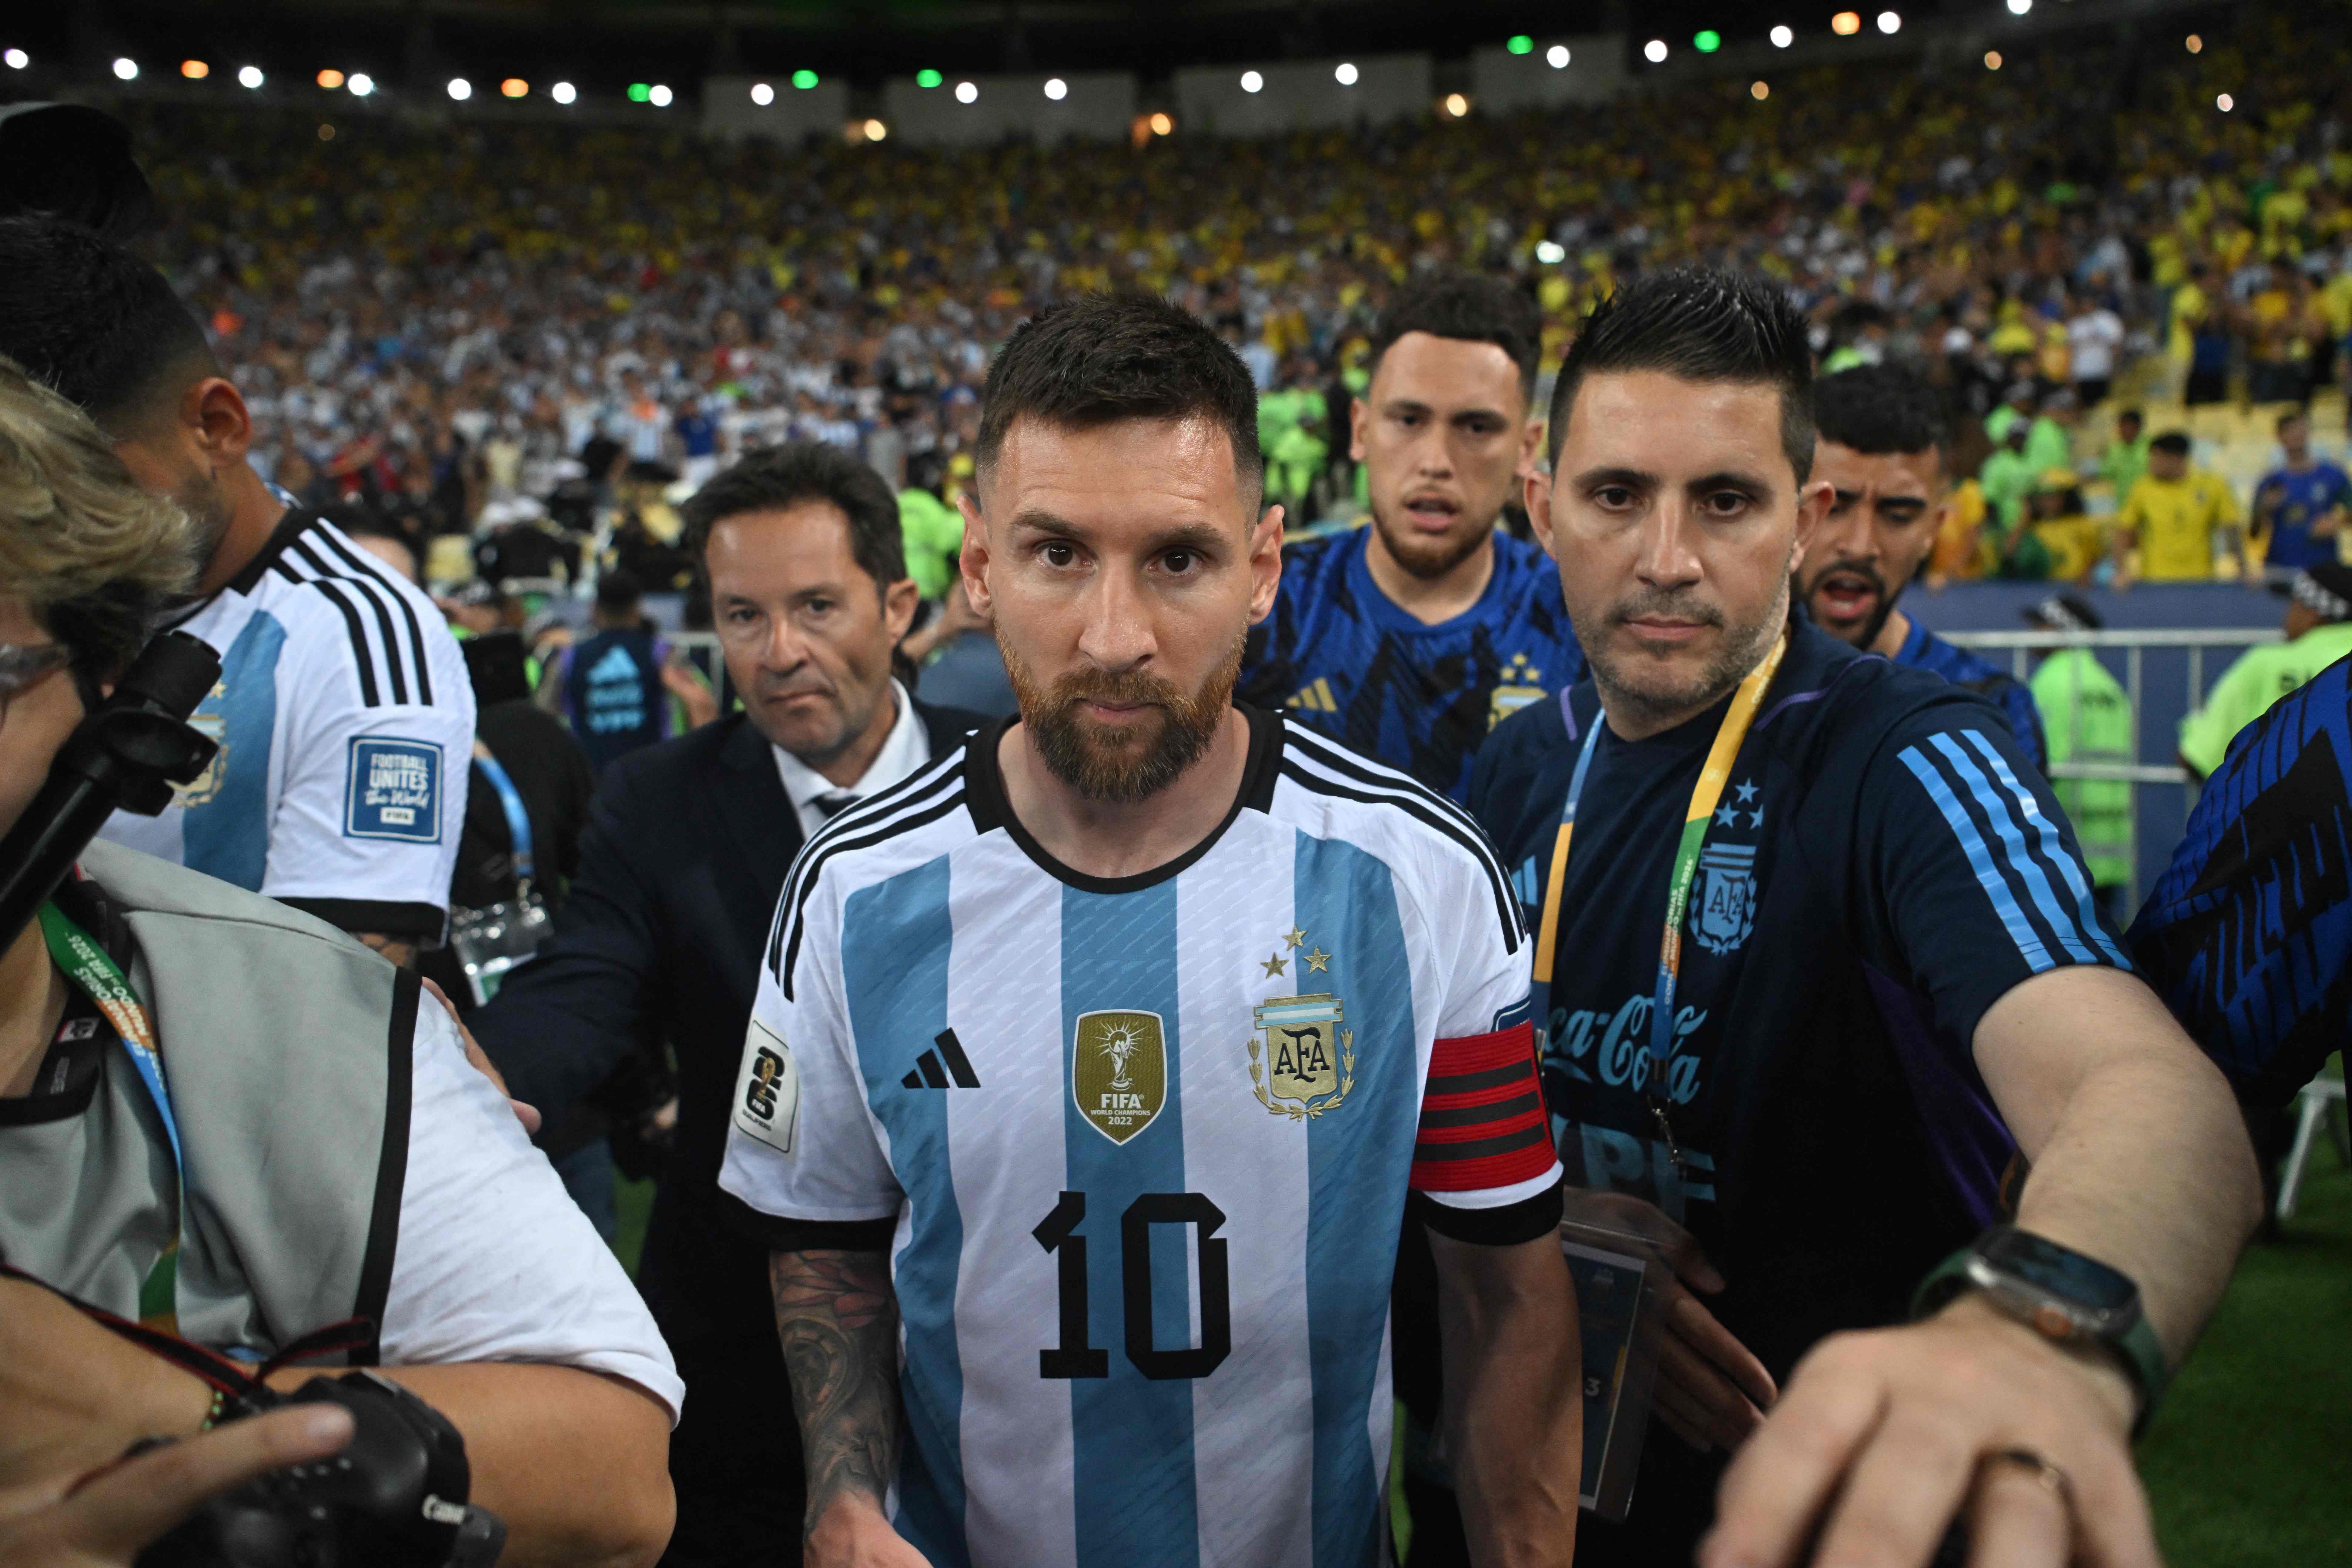 Lionel Messi en el momento que se retira del campo del Maracaná, debido a los incidentes. (Foto Prensa Libre: AFP).